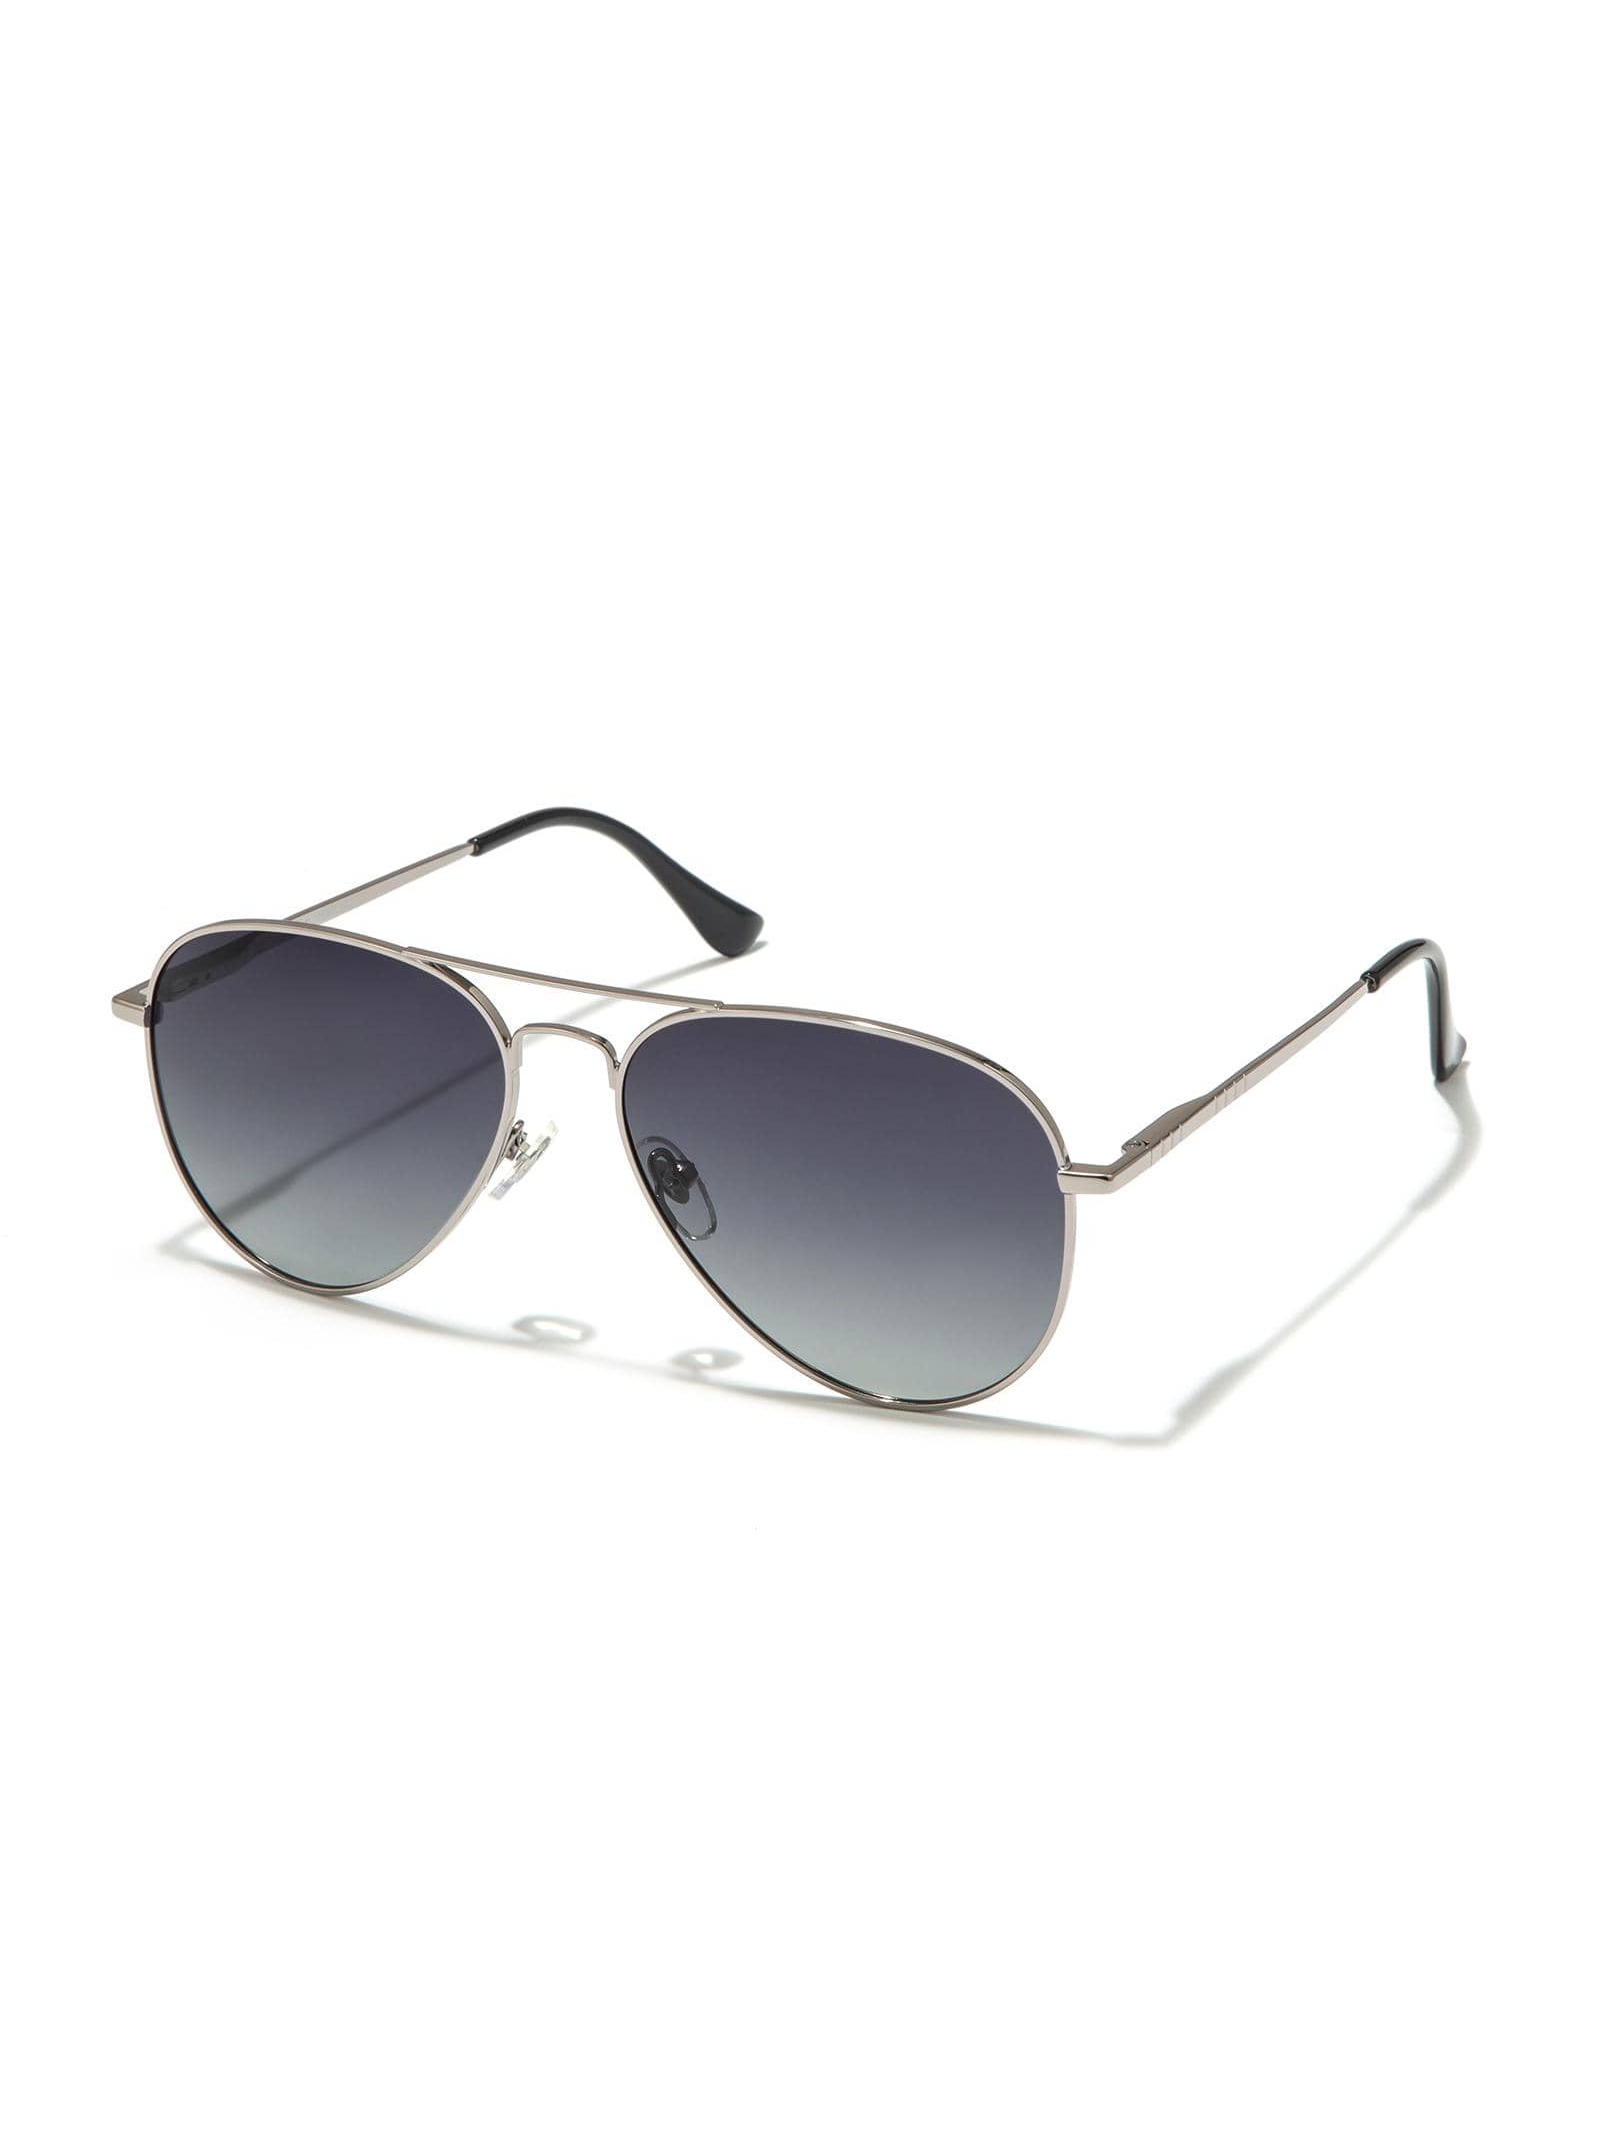 Солнцезащитные очки-авиаторы Veda Tinda для женщин и мужчин солнцезащитные очки carrera авиаторы для мужчин черный